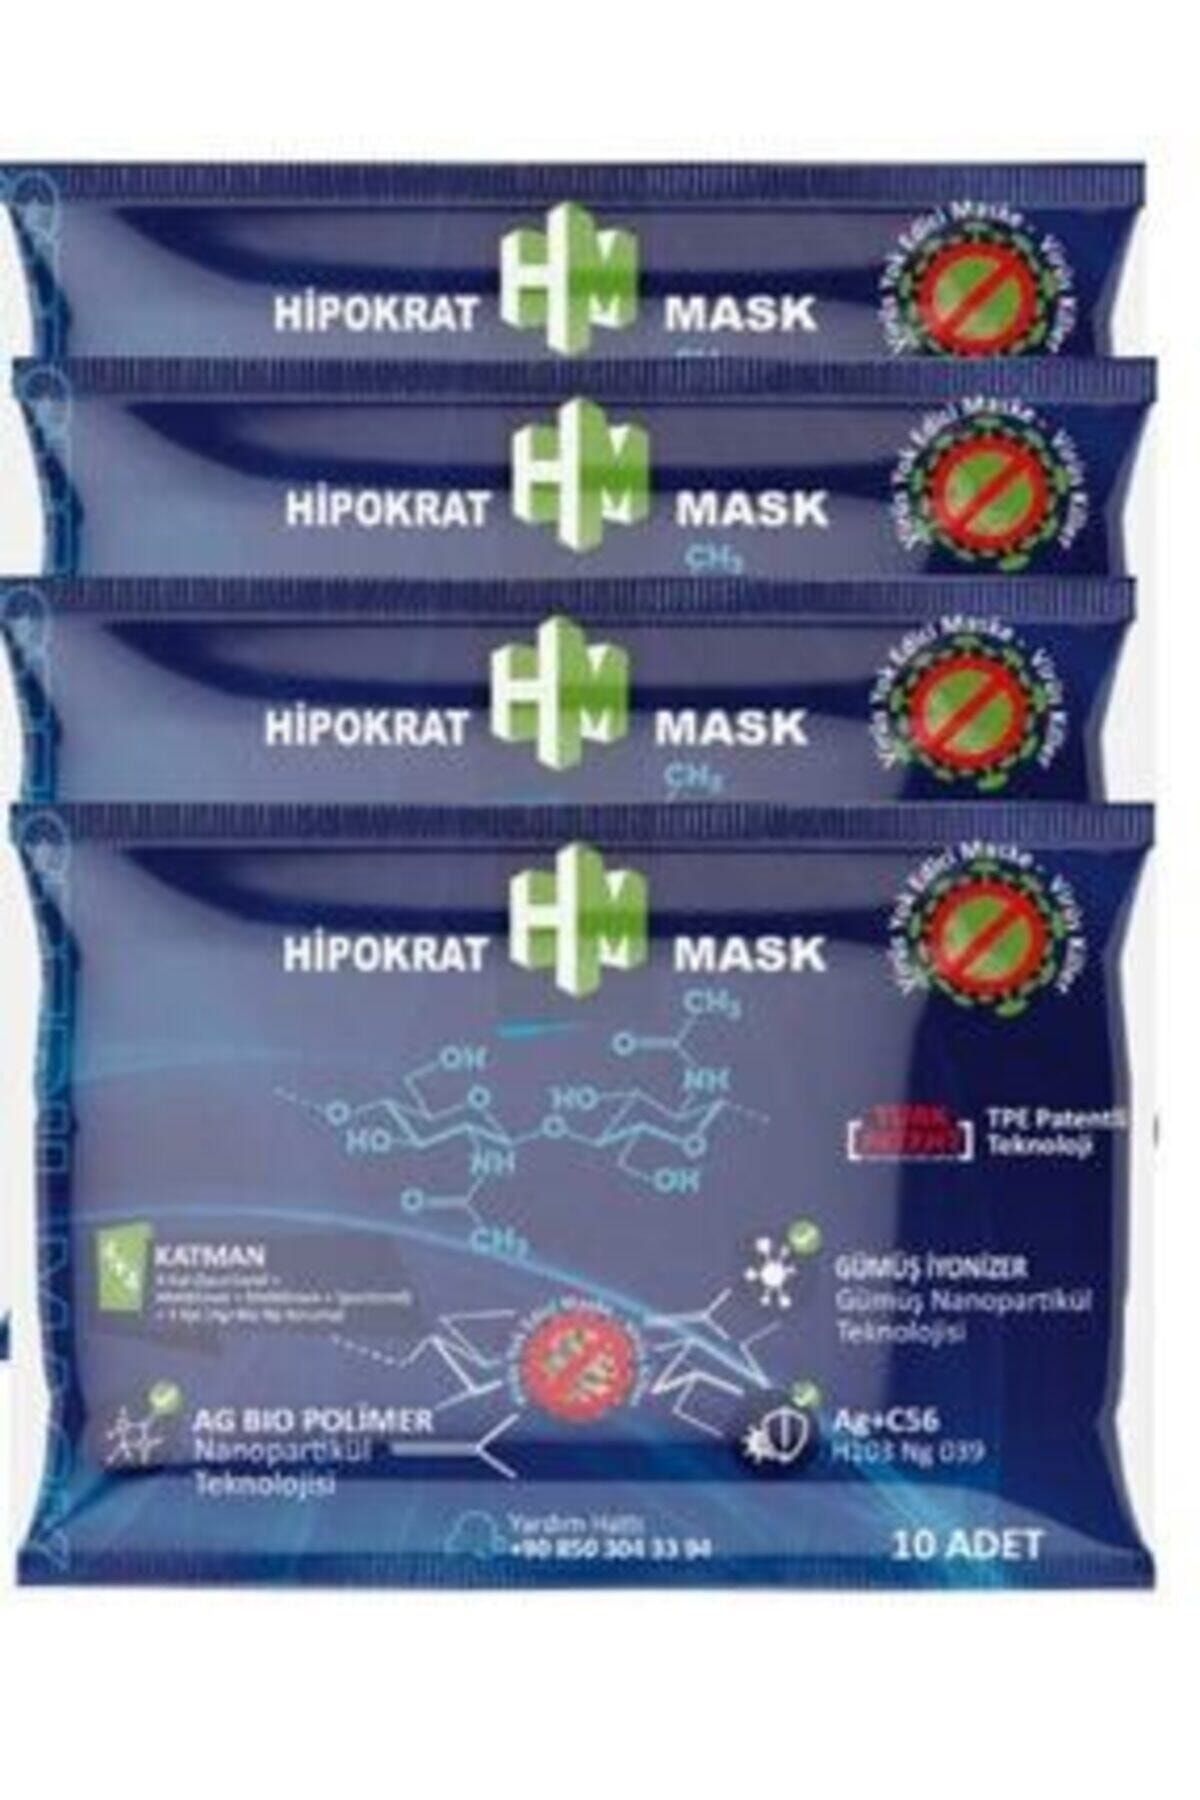 HİPOKRAT MASK Hipokrat 4 4 Katlı Cerrahi Maske 10x4'lü Paket E